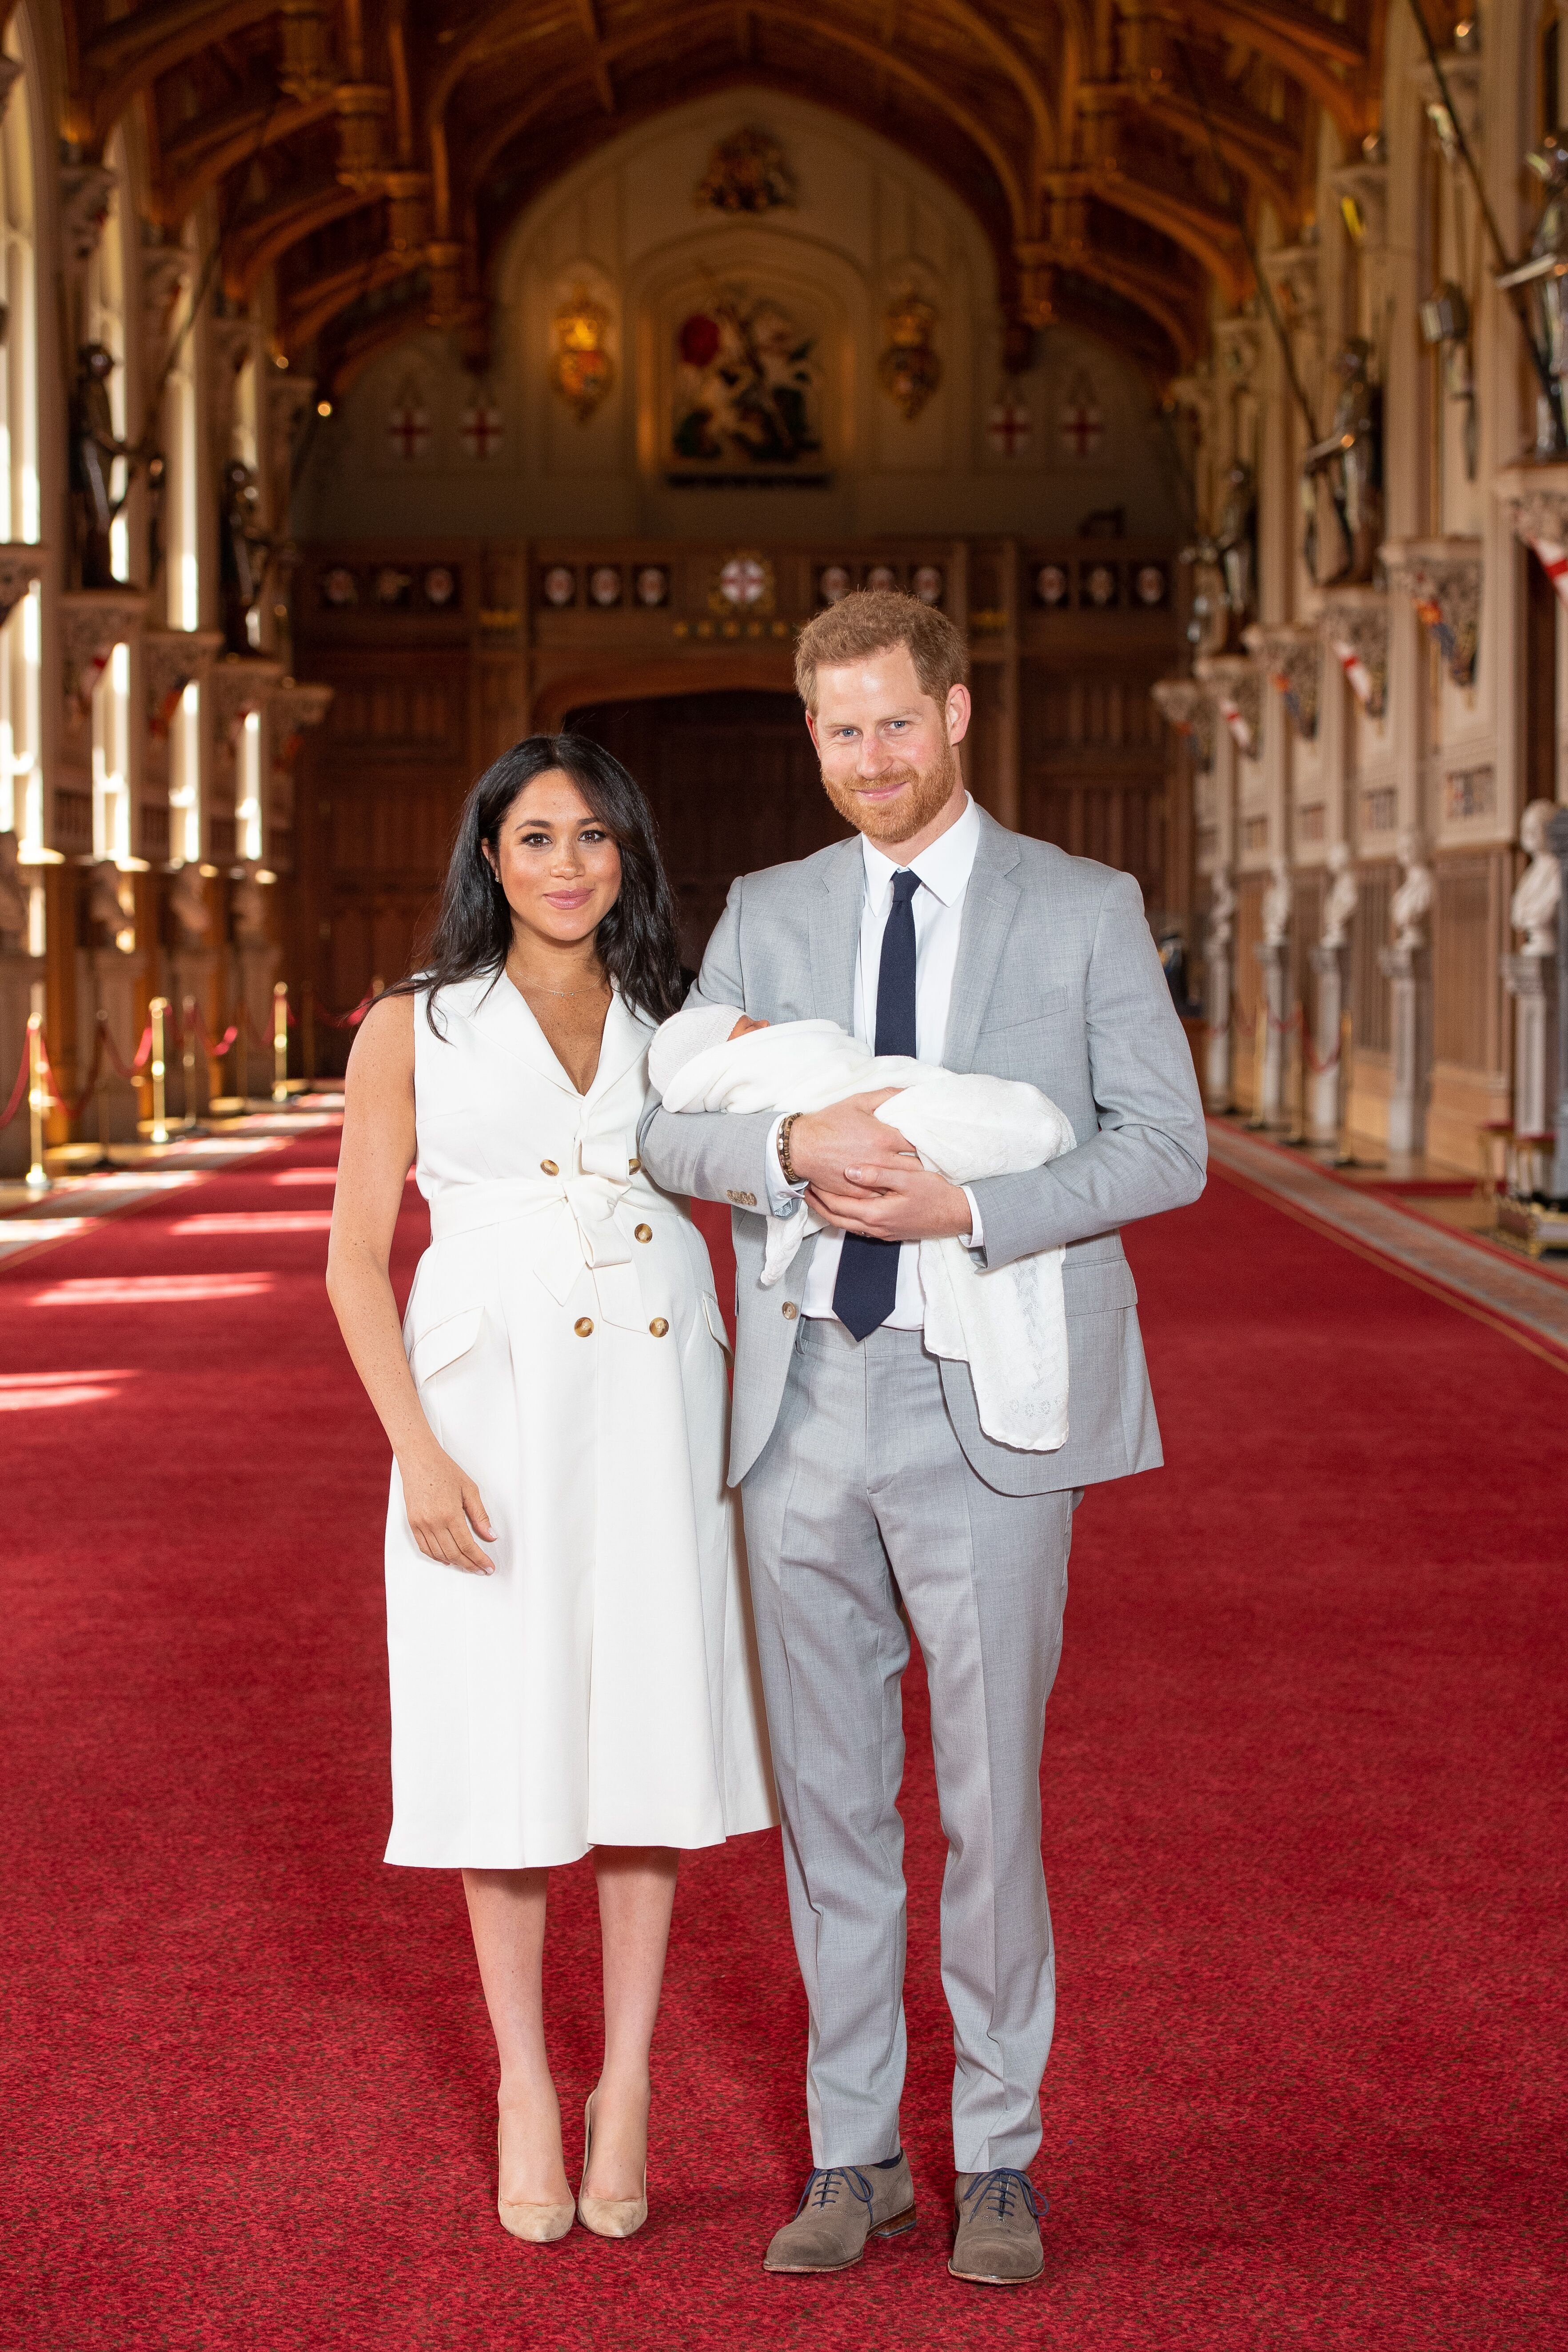 Meghan Markle, le Prince Harry, et leur fils lors de sa première apparition publique | Source : Getty Images